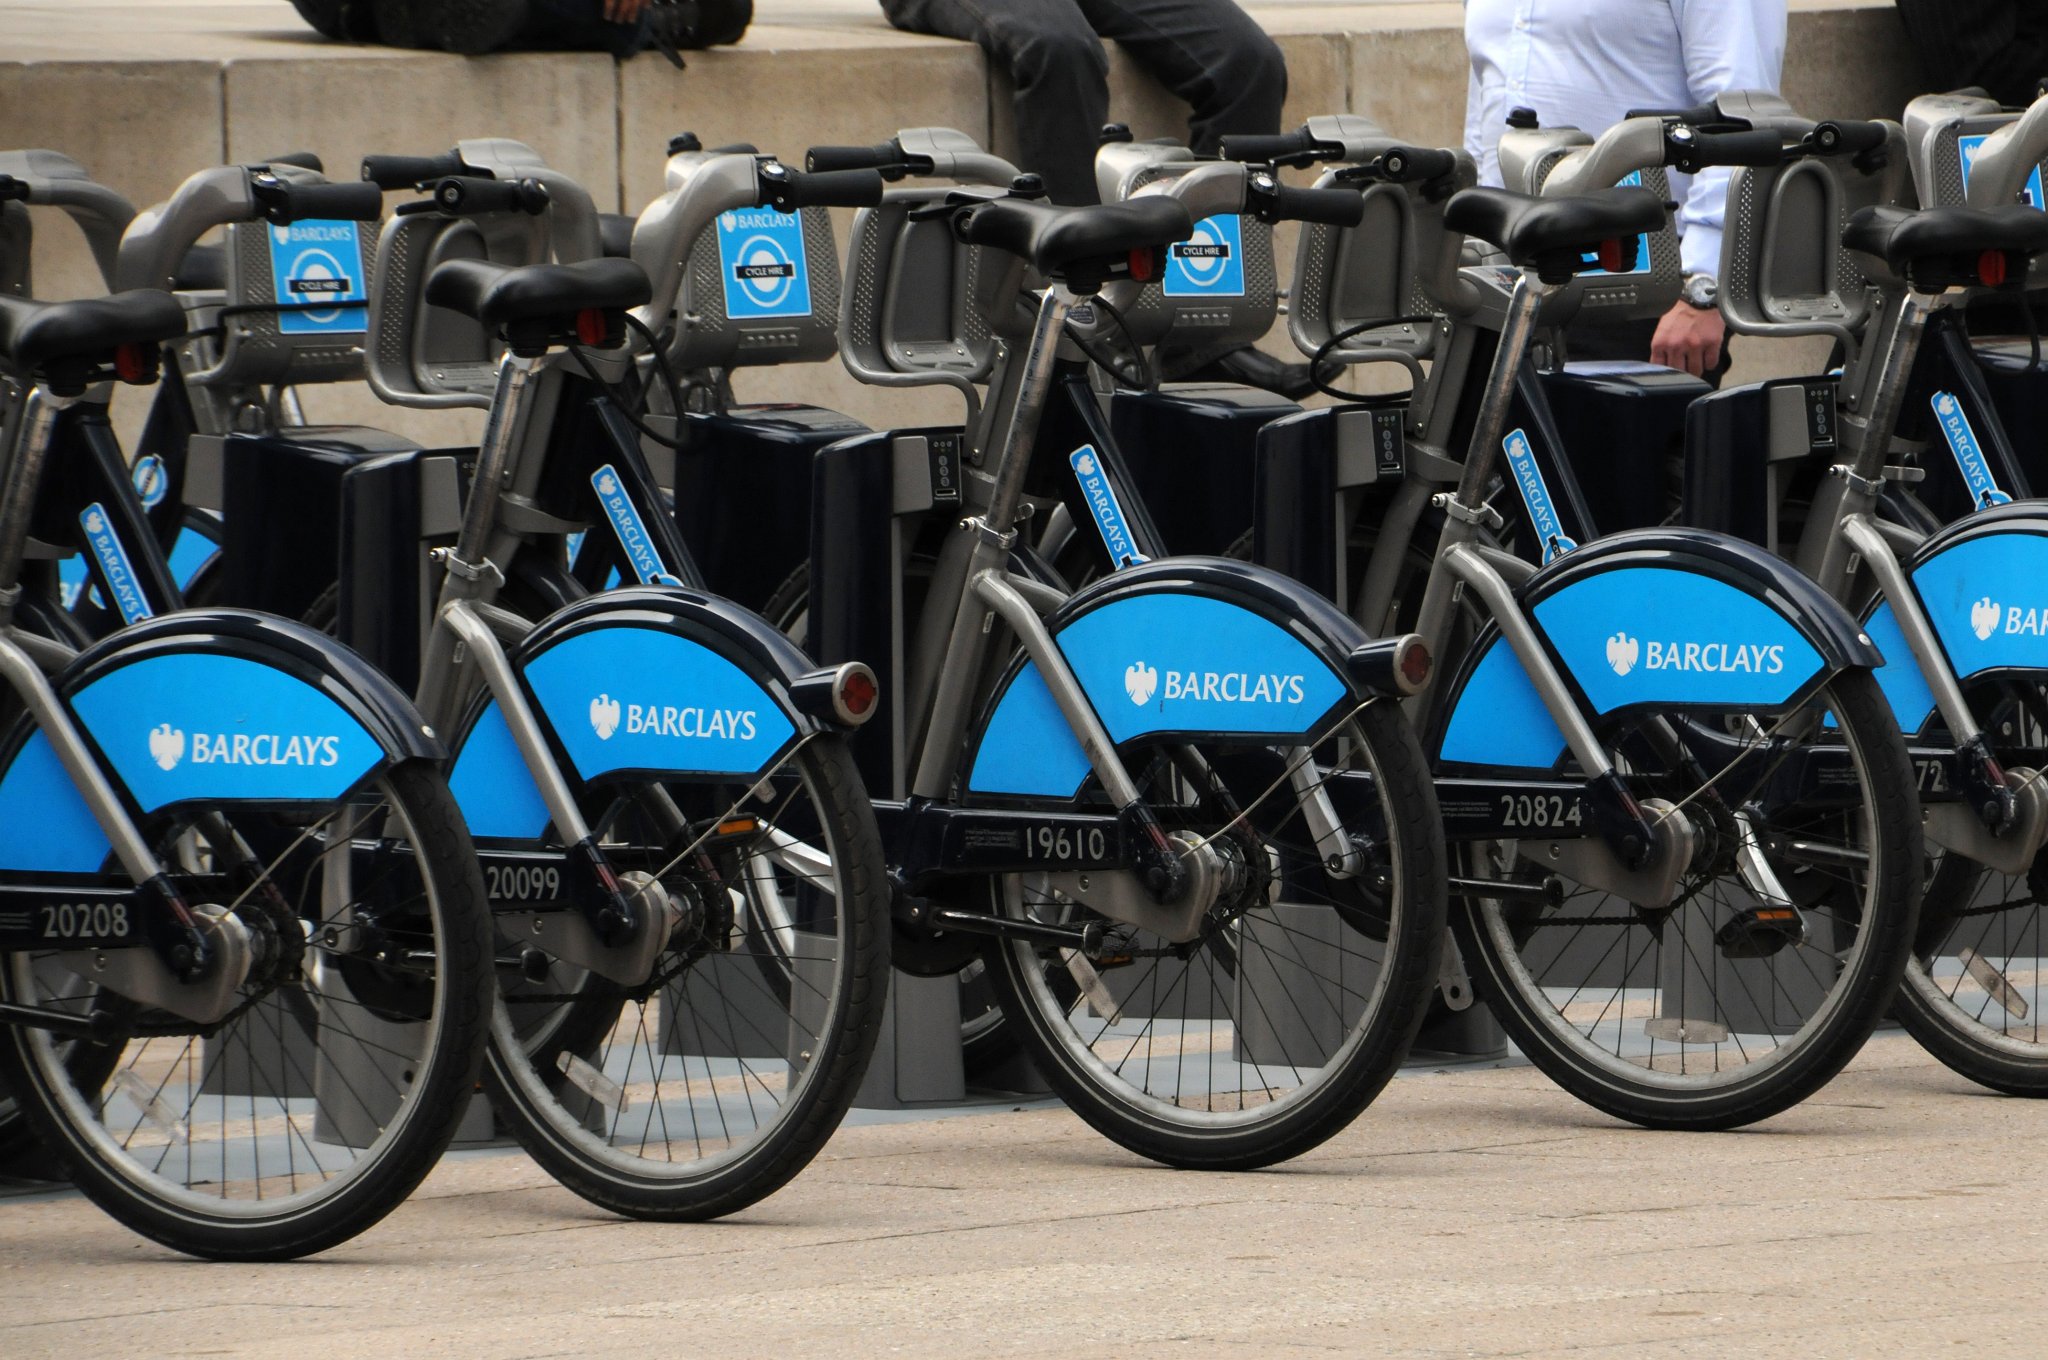 DSC_4363_3.jpg - Barclays Cycle Hire (zkracováno BCH, cycle hire znamená anglicky půjčovna jízdních kol) je systém sdílení kol v Londýně. Do provozu byl uveden 30. června 2010 a někdy je mu přezdíváno Boris bikes (tzn. Borisovy bicykly) podle Borise Johnsona, starosty Londýna, který vznik systému podporoval. Systém sdílení kol (používá se i anglické Bike Sharing System) je síť stanic s jízdními koly, které si lze vypůjčit na jednom stanovišti a na jiném je vrátit, jedná se tedy o distribuovanou půjčovnu jízdních kol.